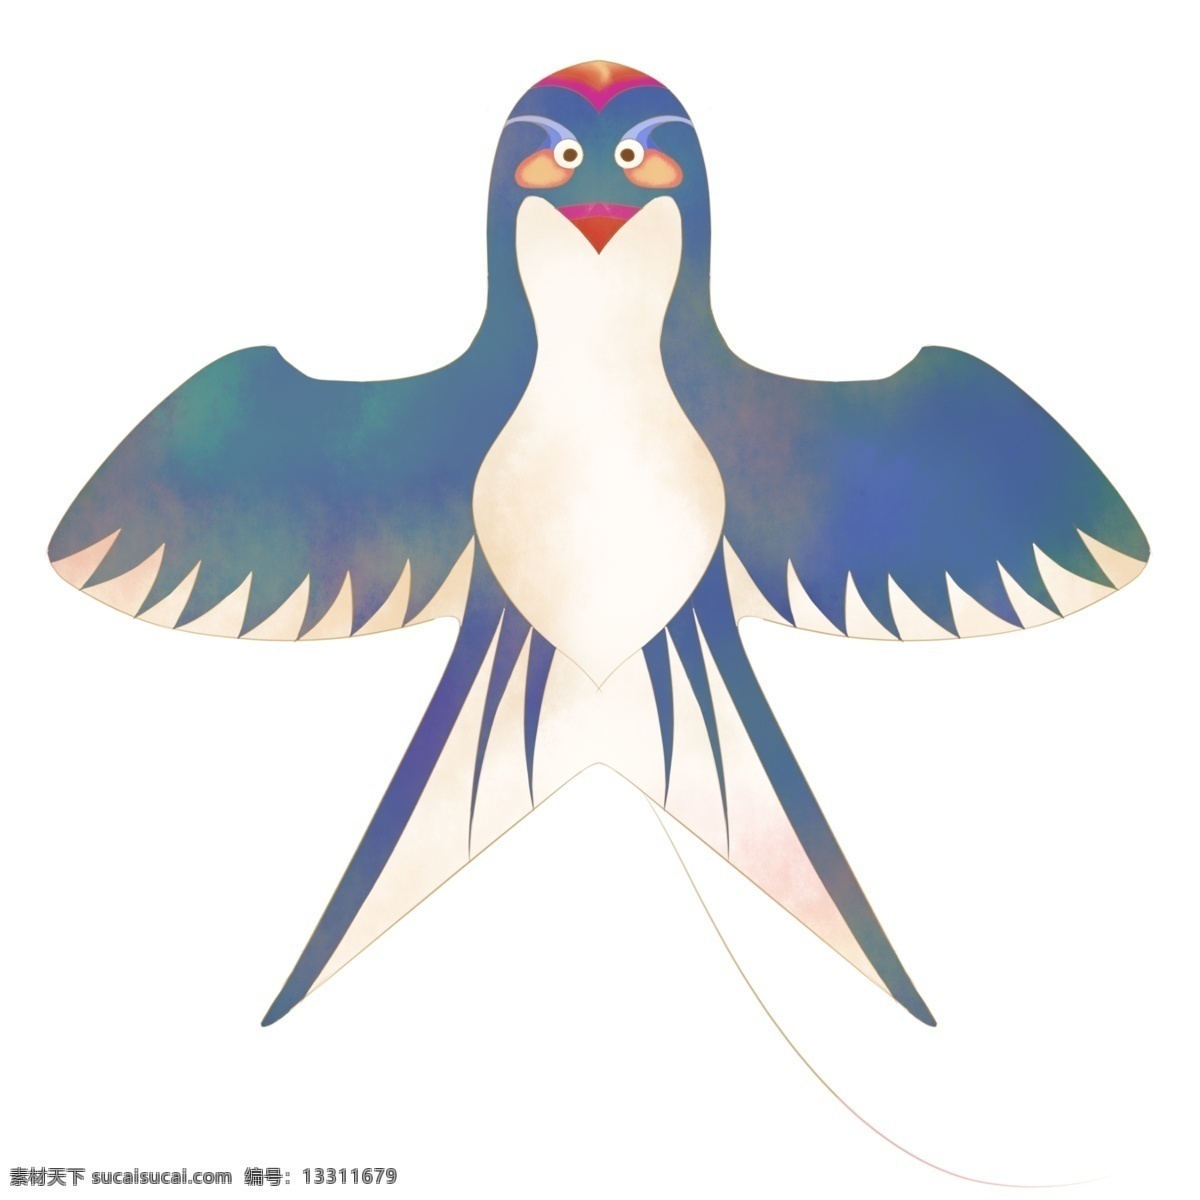 中国 风 漂亮 燕子 中国风燕子 漂亮的燕子 蓝色的燕子 燕子翅膀 飞行的燕子 燕子插画 小鸟 动物